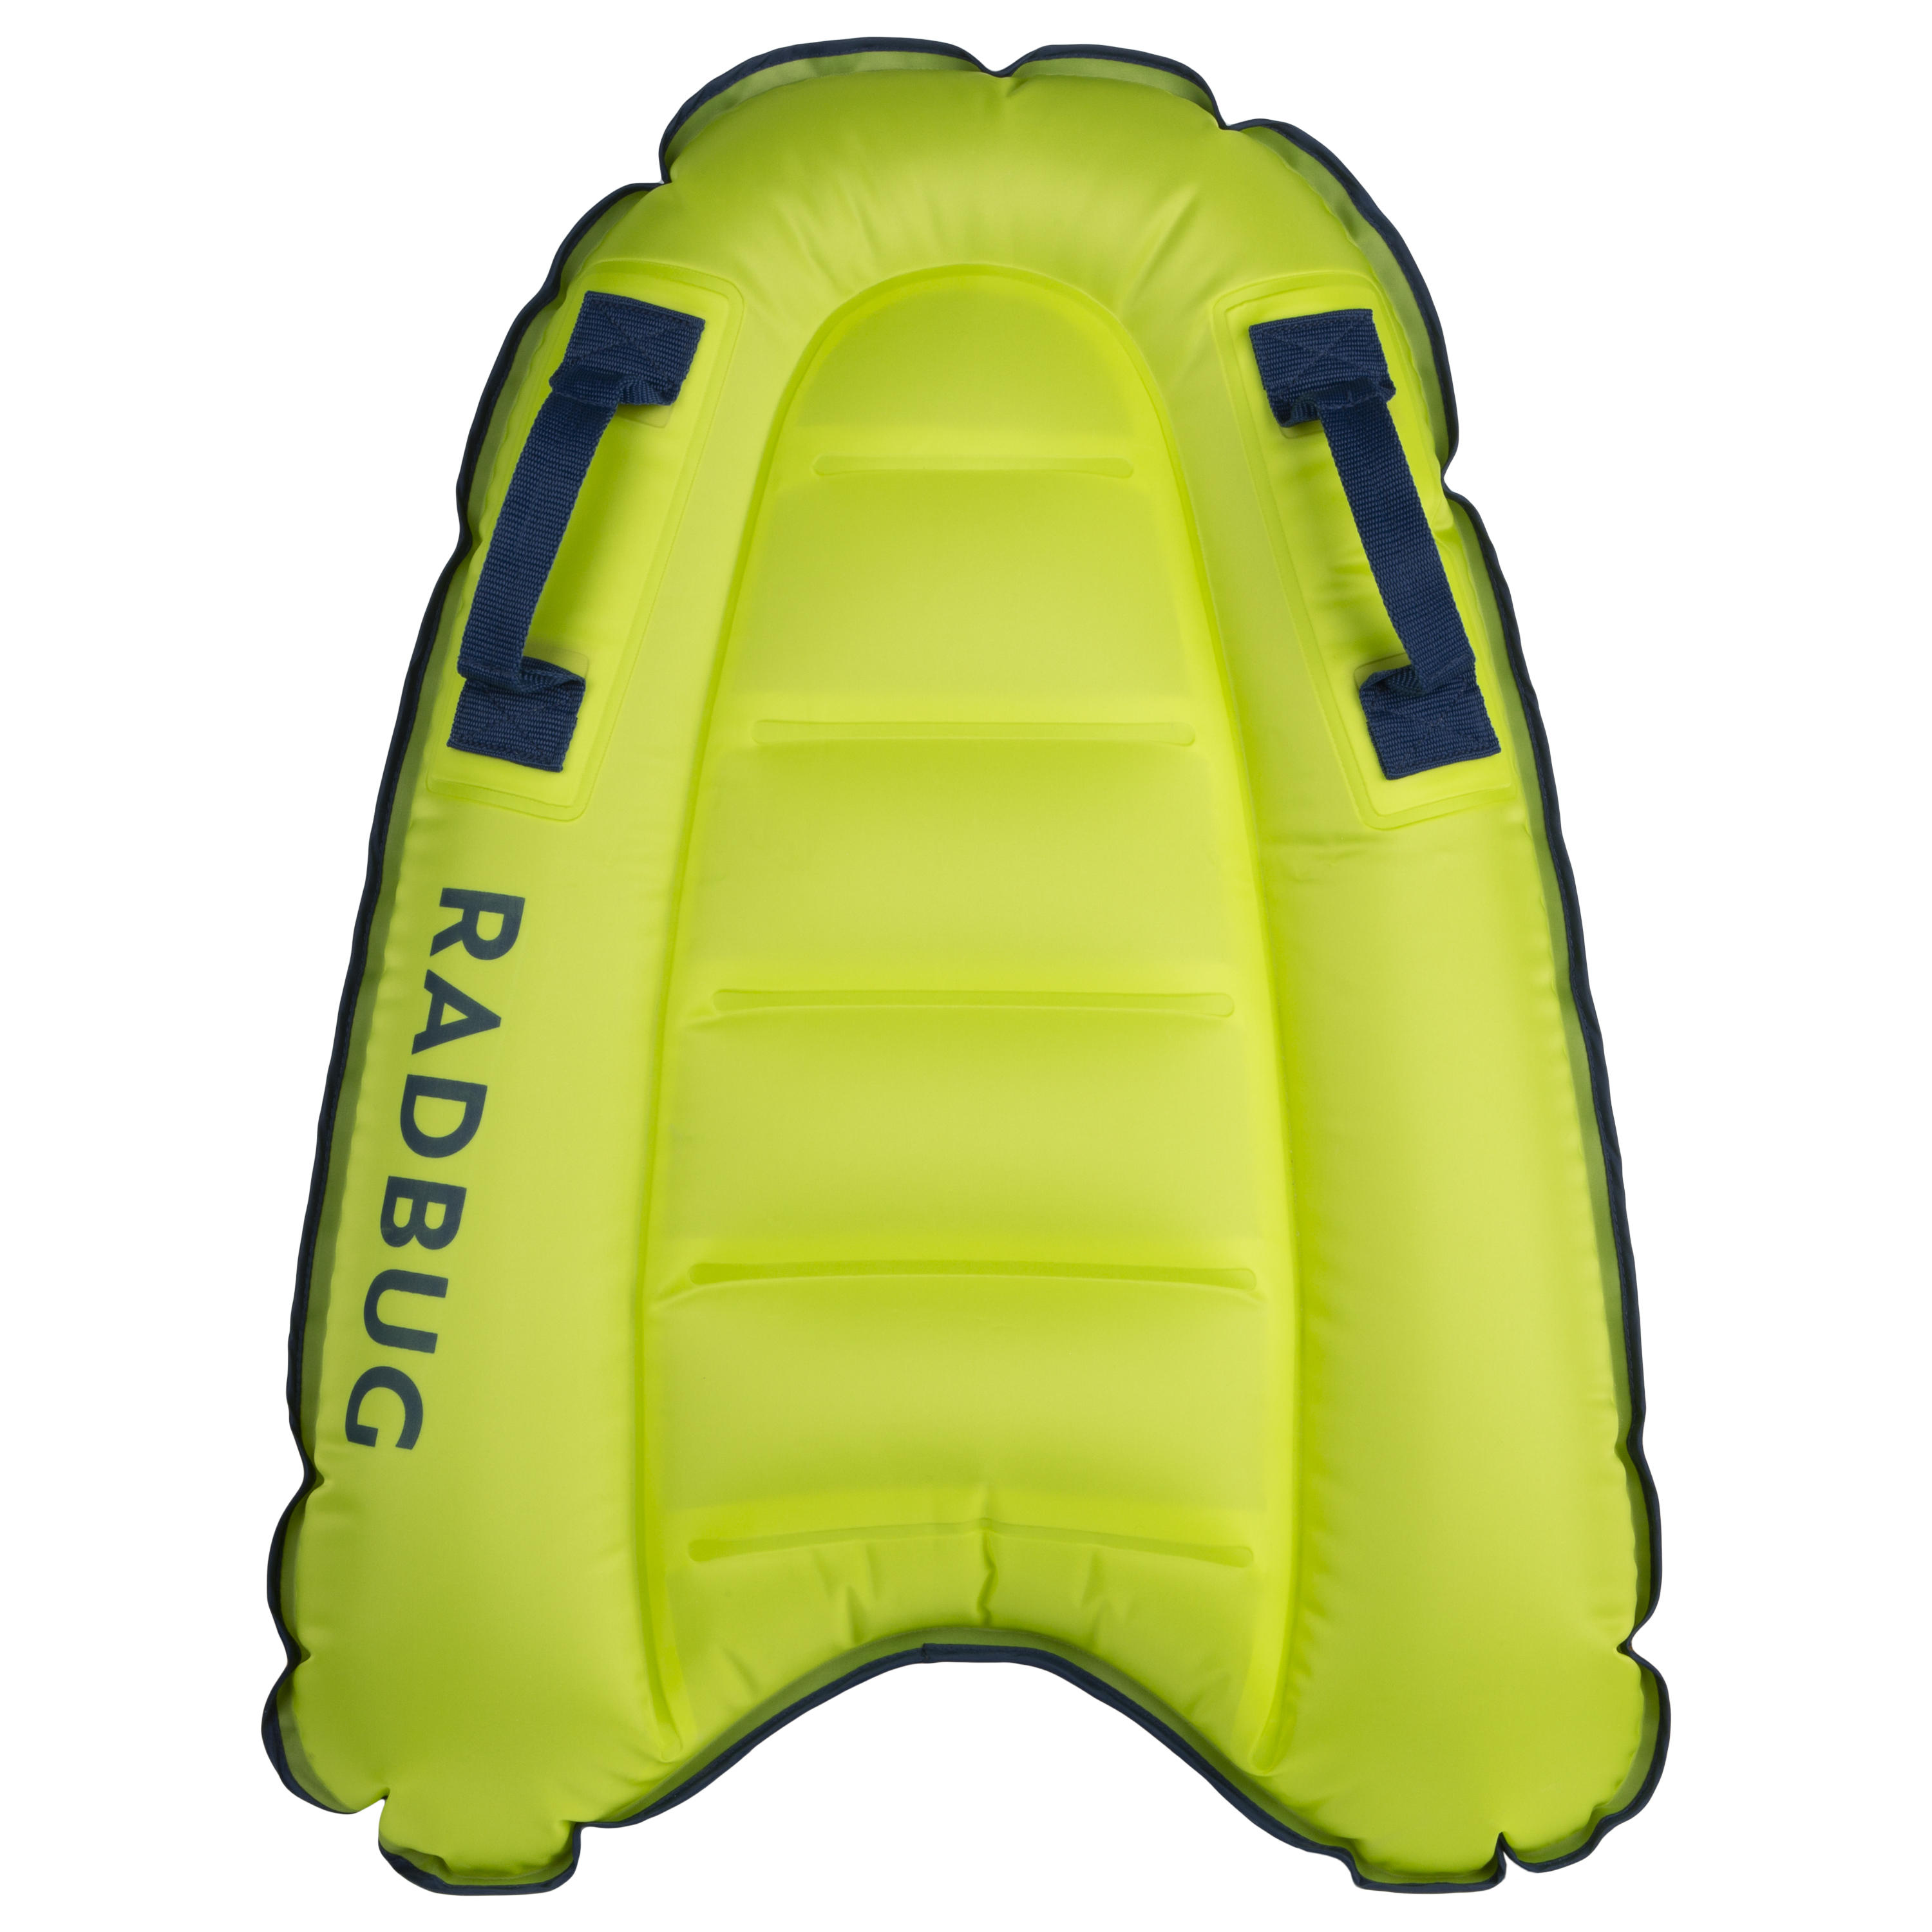 Inflatable Bodyboards